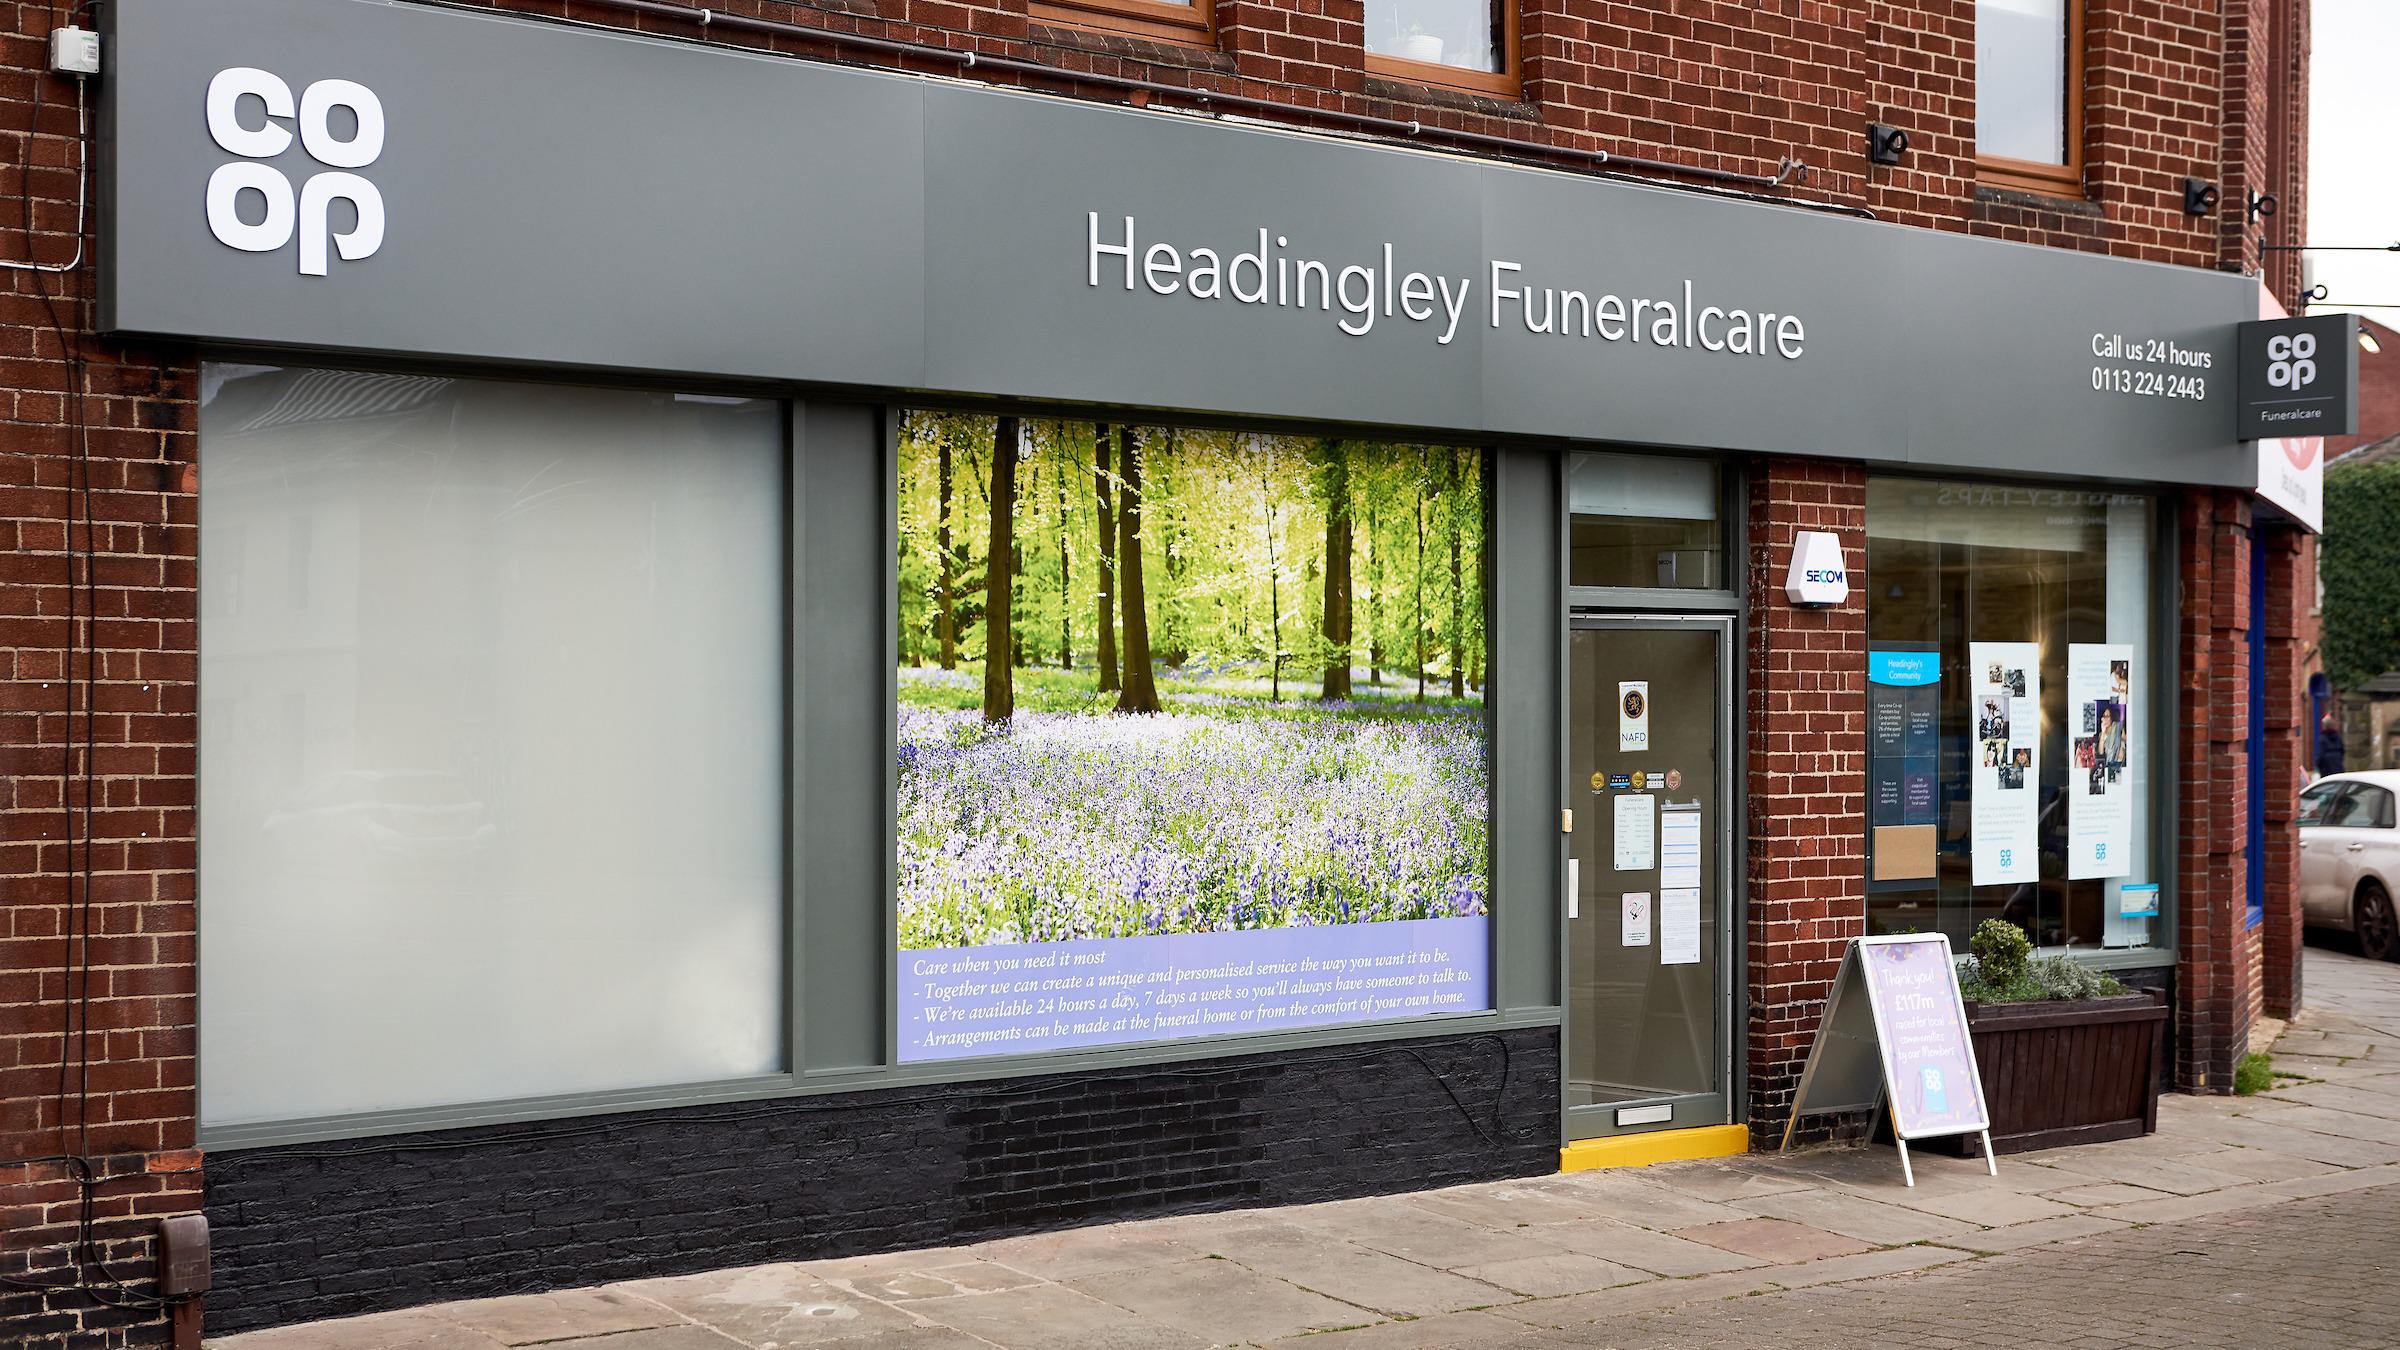 Co-op Funeralcare, Headingley - Funeral Directors Co-op Funeralcare, Headingley Leeds 01132 242443